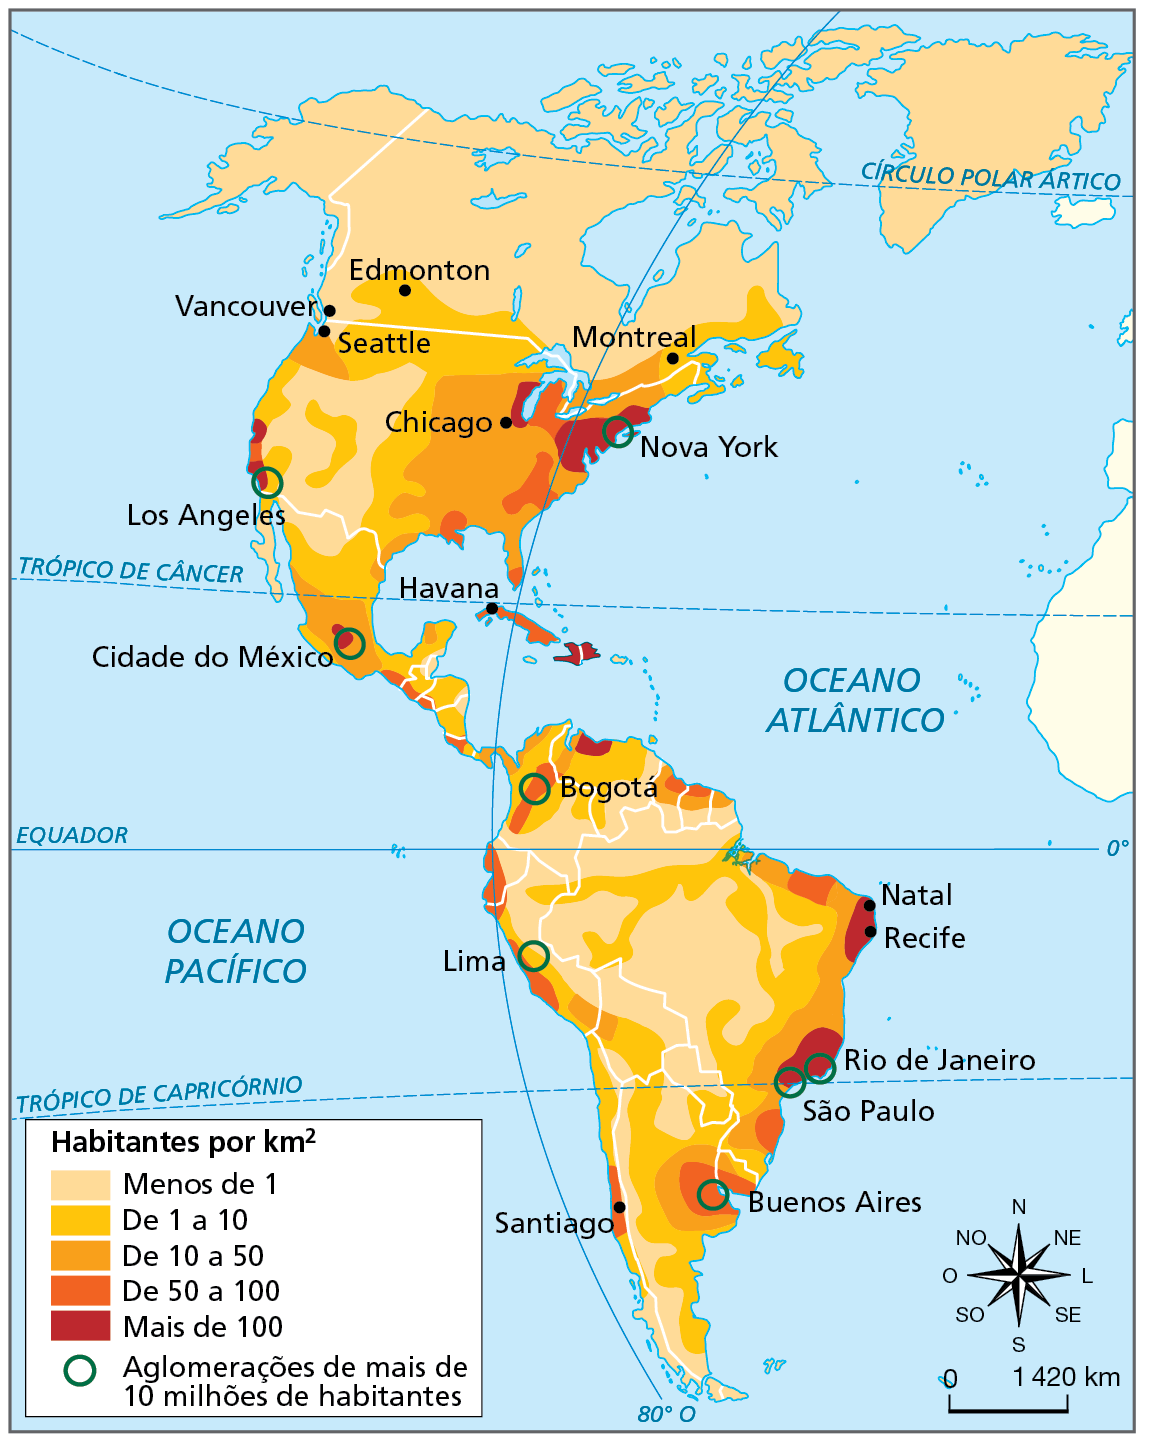 Mapa. América: densidade demográfica, 2020.  Mapa do continente americano com a representação das densidades demográficas no continente.  As densidades são representadas por uma gradação de tons de laranja. Quanto mais claro o tom, mais baixa é a densidade demográfica. Menos de 1 habitante por quilômetro quadrado: toda a porção norte da América do Norte, área no centro-oeste da América do Norte, porção central e parte do norte da América do Sul e faixa na zona de fronteira entre Argentina e Chile.  De 1 a 10 habitantes por quilômetro quadrado: porção na faixa de fronteira entre Canadá e Estados Unidos, trecho no centro dos Estados Unidos, maior parte da América Central, norte da Venezuela e da Colômbia, área nas margens dos rios Negro e Amazonas, faixa entre a área central do Brasil e as regiões nordeste e sudeste e extensa faixa no sentido norte-sul no centro de Bolívia e Argentina.  De 10 a 50 habitantes por quilômetro quadrado: área no sudeste dos Estados Unidos, no centro do México e em parte da costa leste do Brasil e da Argentina.   De 50 a 100 habitantes por quilômetro quadrado:  mancha entre as cidades de Nova York e Chicago, mancha no sudeste dos Estados Unidos, em Cuba, na costa oeste da América Central, e manchas próximas às cidades de Bogotá, Lima, Santiago e Buenos Aires.  Mais de 100 habitantes por quilômetro quadrado: manchas nas cidades e ao redor de Nova York, Chicago, Los Angeles, Cidade do México, Natal, Recife, Rio de Janeiro e São Paulo.  Aglomerações de mais de 10 milhões de habitantes: Los Angeles, Nova York, Cidade do México, Bogotá, Lima, Rio de Janeiro, São Paulo e Buenos Aires. À direita, rosa dos ventos e escala de 0 a 1.420 quilômetros.